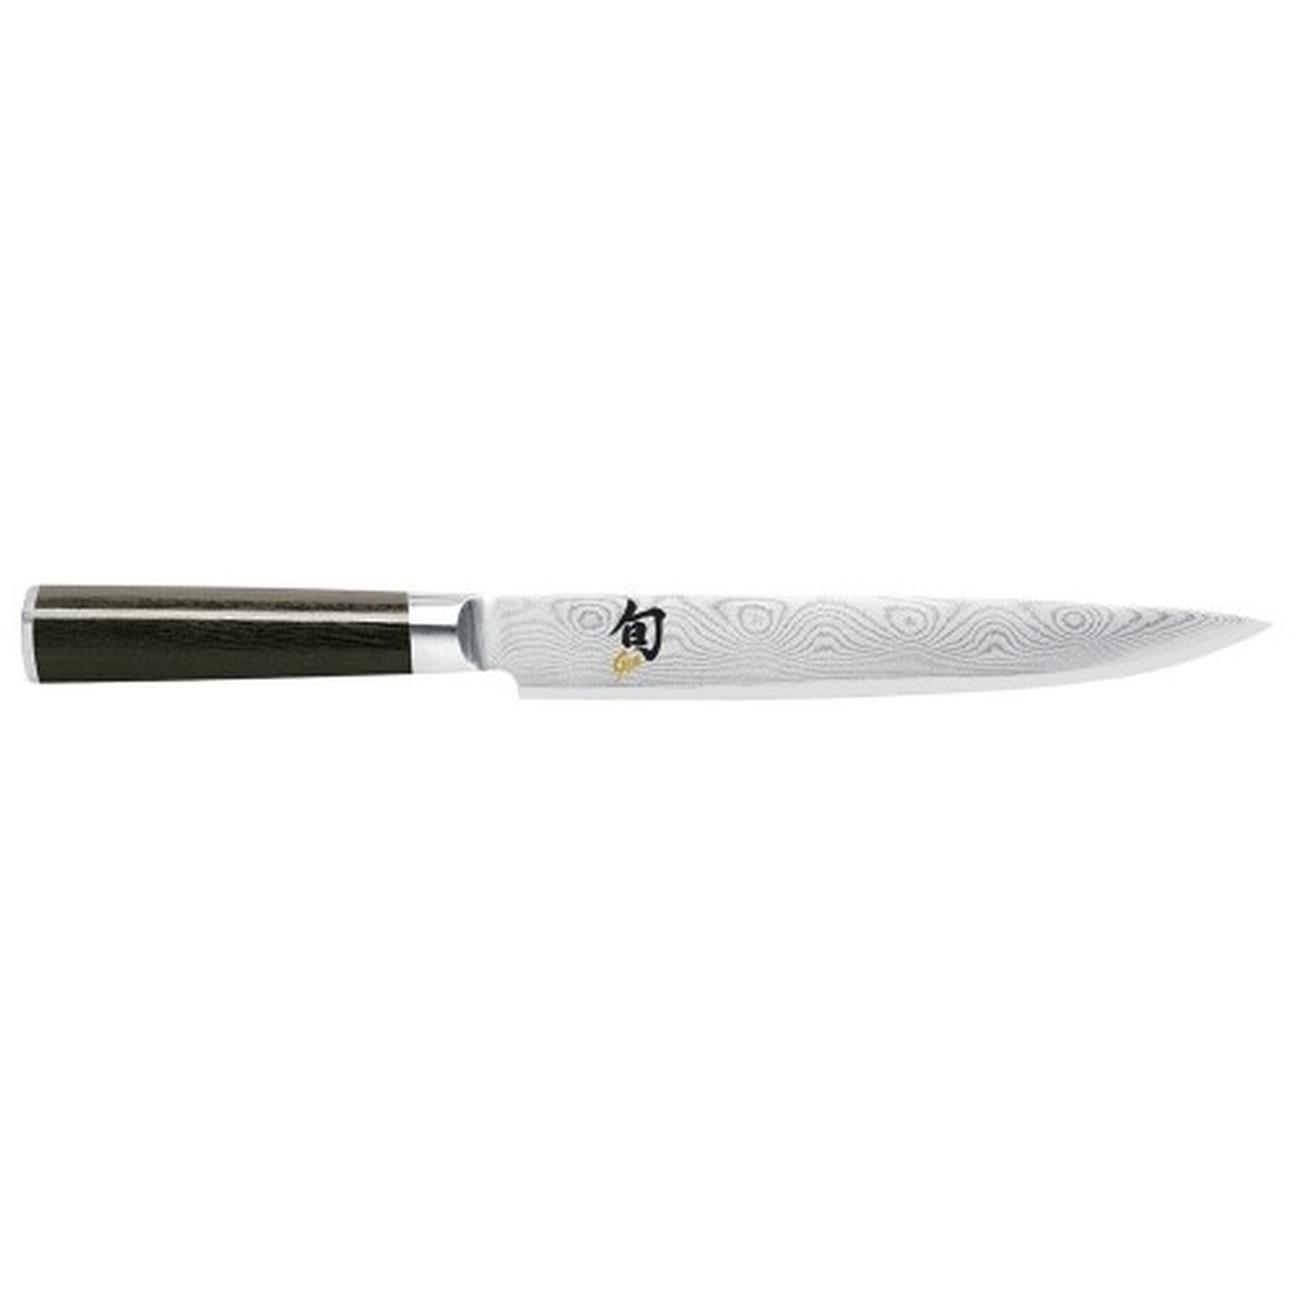 kai-shun-slicing-knife-9-inch - Kai Shun Slicing Knife 9 Inch